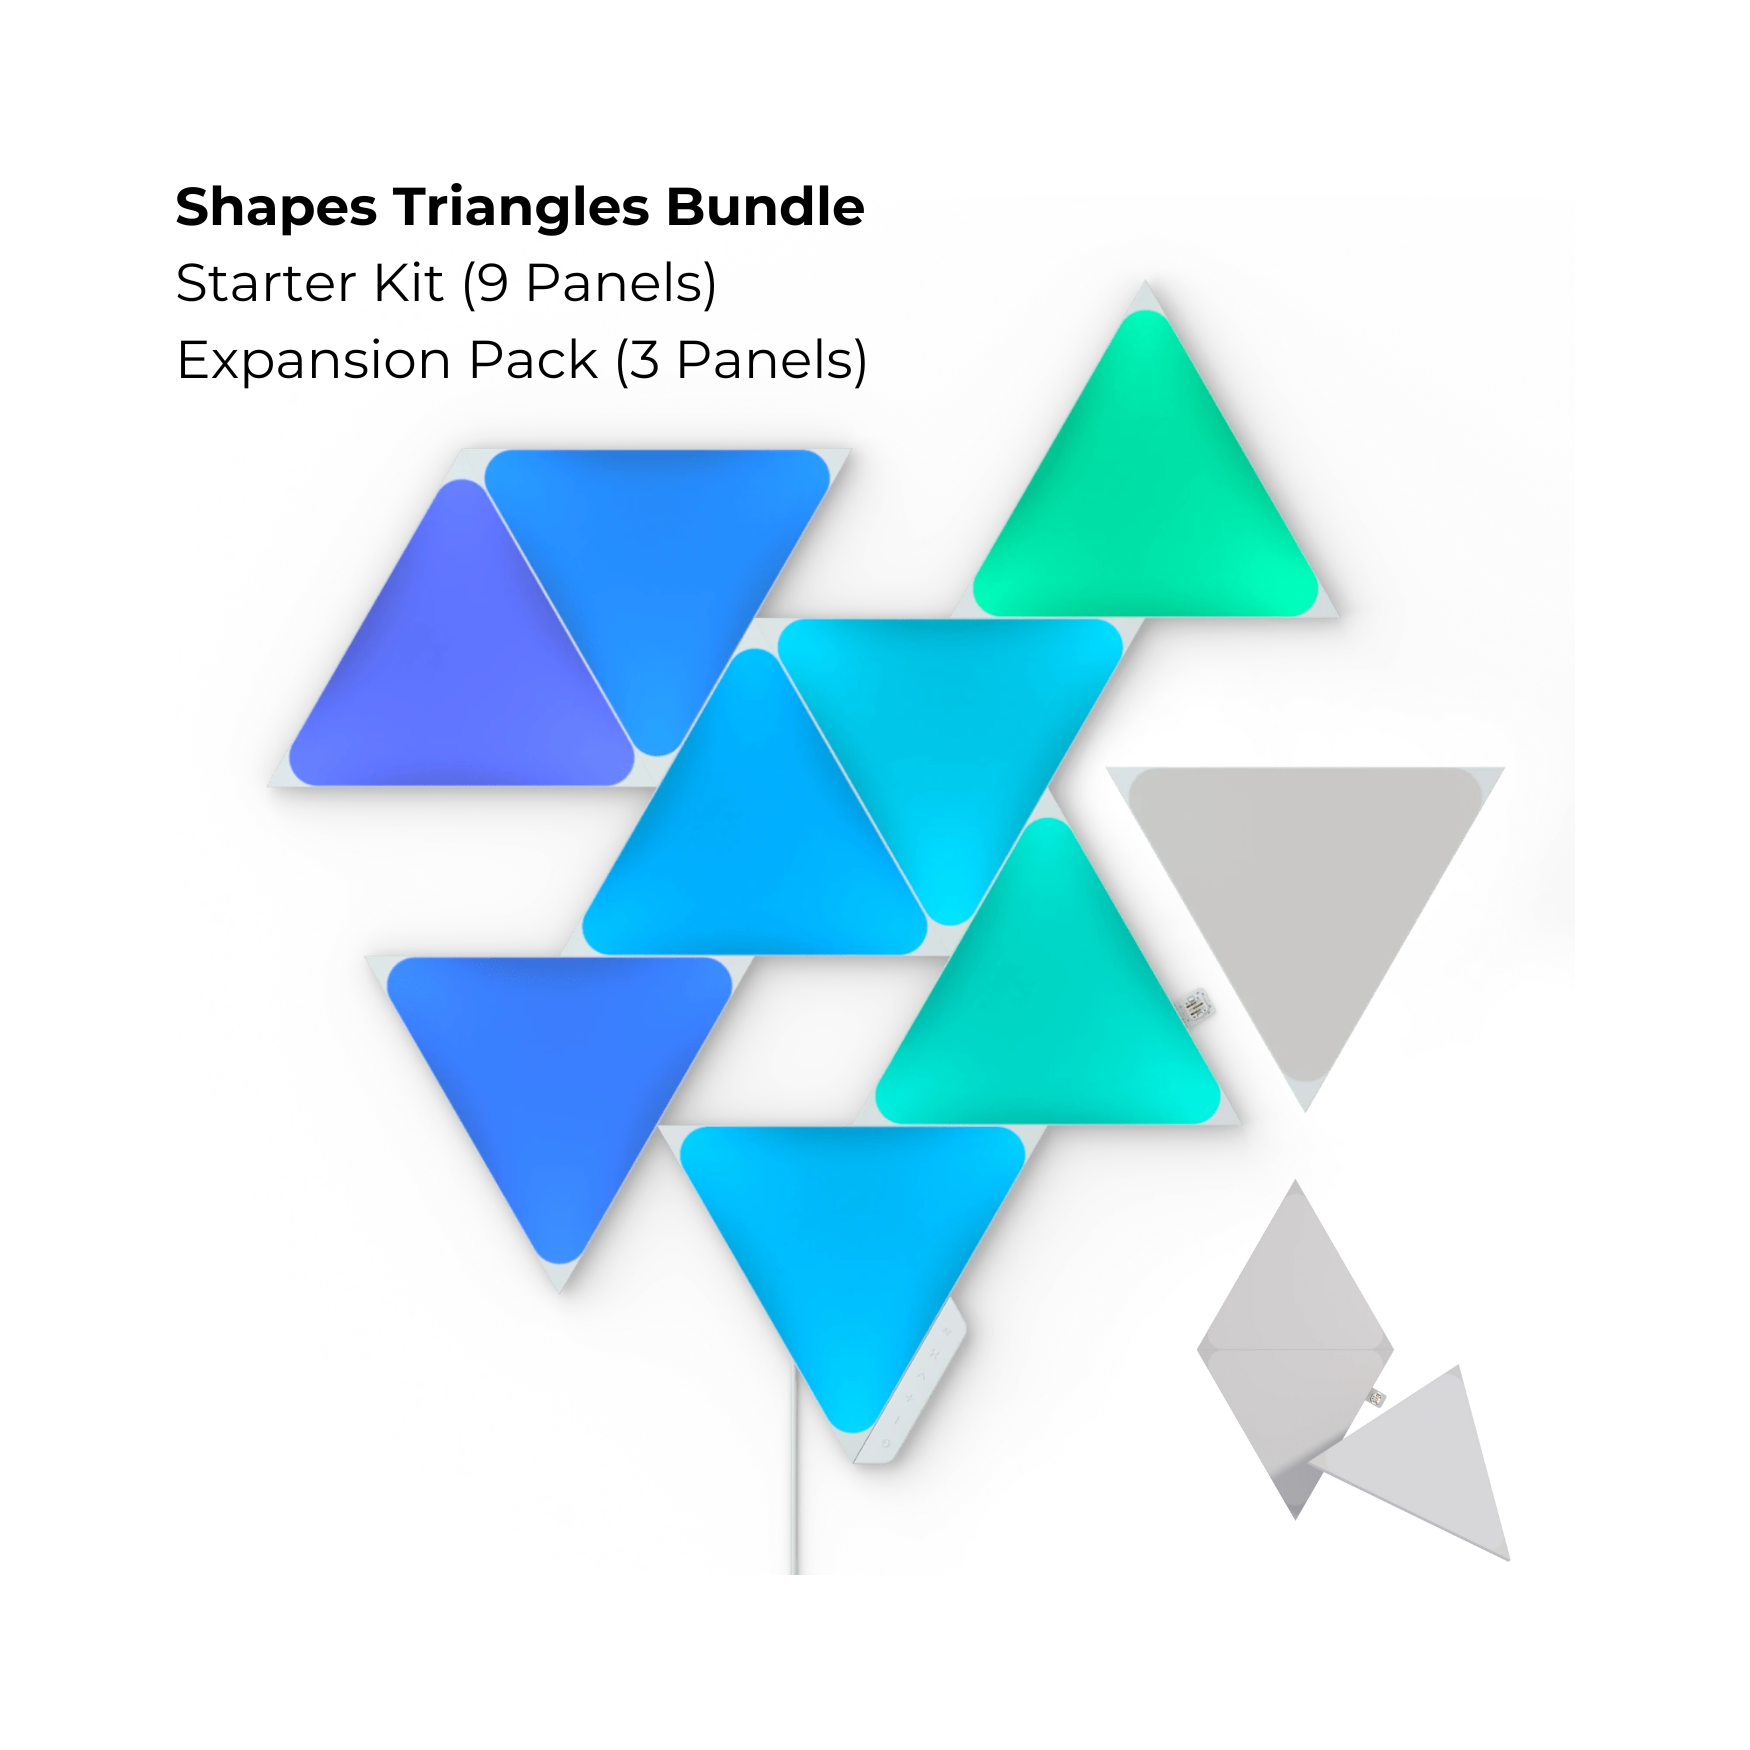 (Dec Brand Of The Day) Nanoleaf Shapes Triangles Bundle Starter Kit (9 Panels) + Expansion Pack (3 Panels)